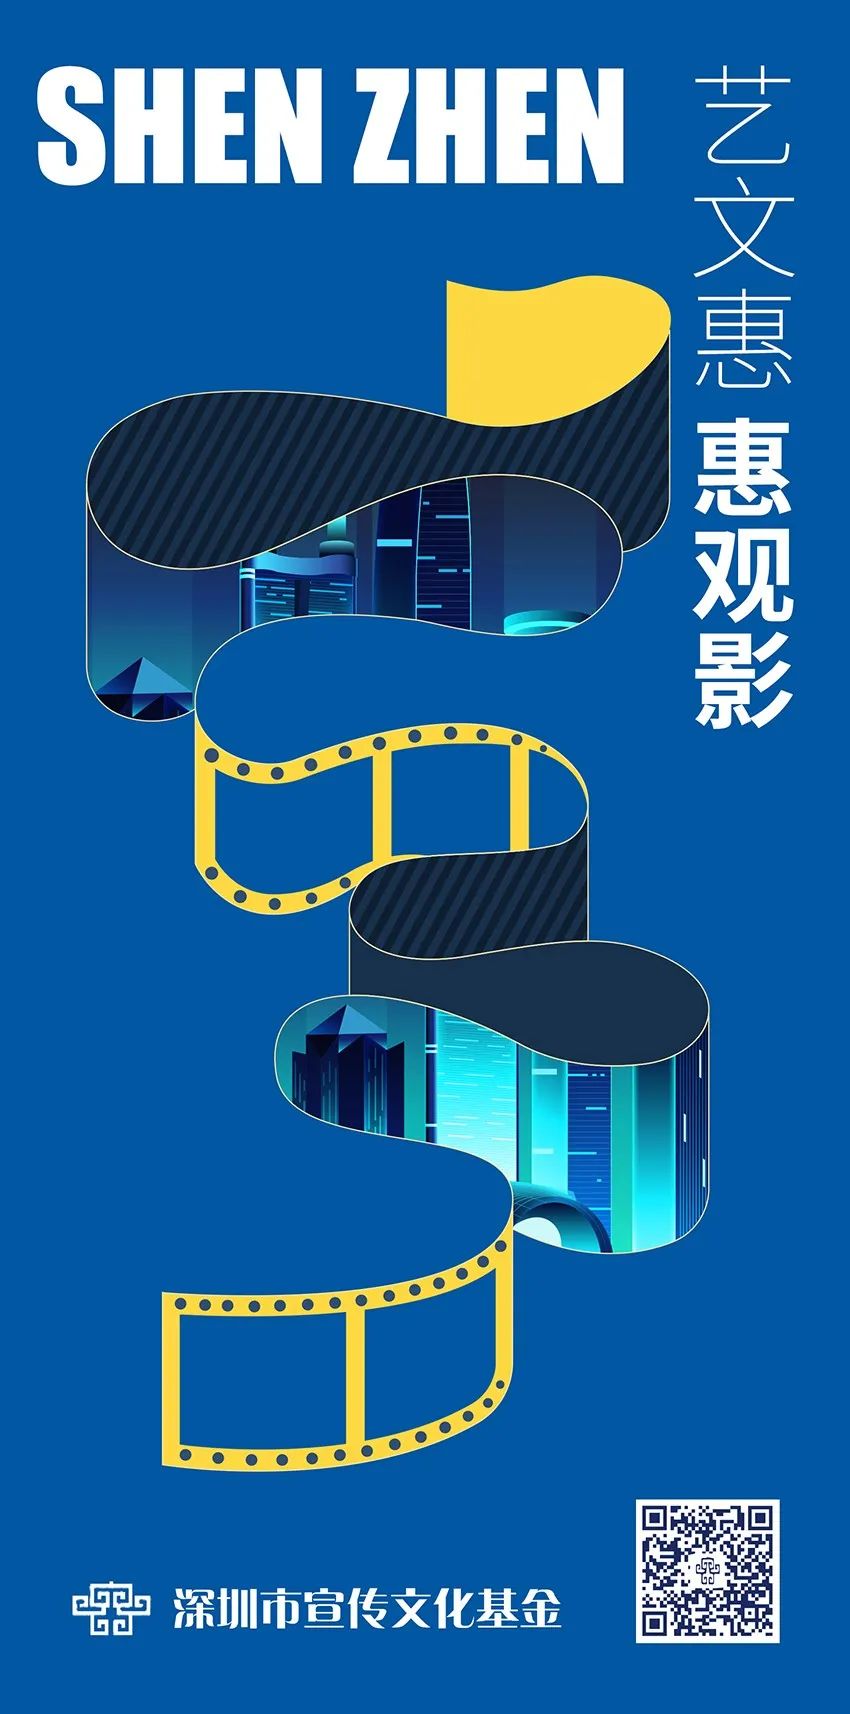 深圳市宣传文化基金联合中国银联深圳分公司首次发放千万元电影消费券 